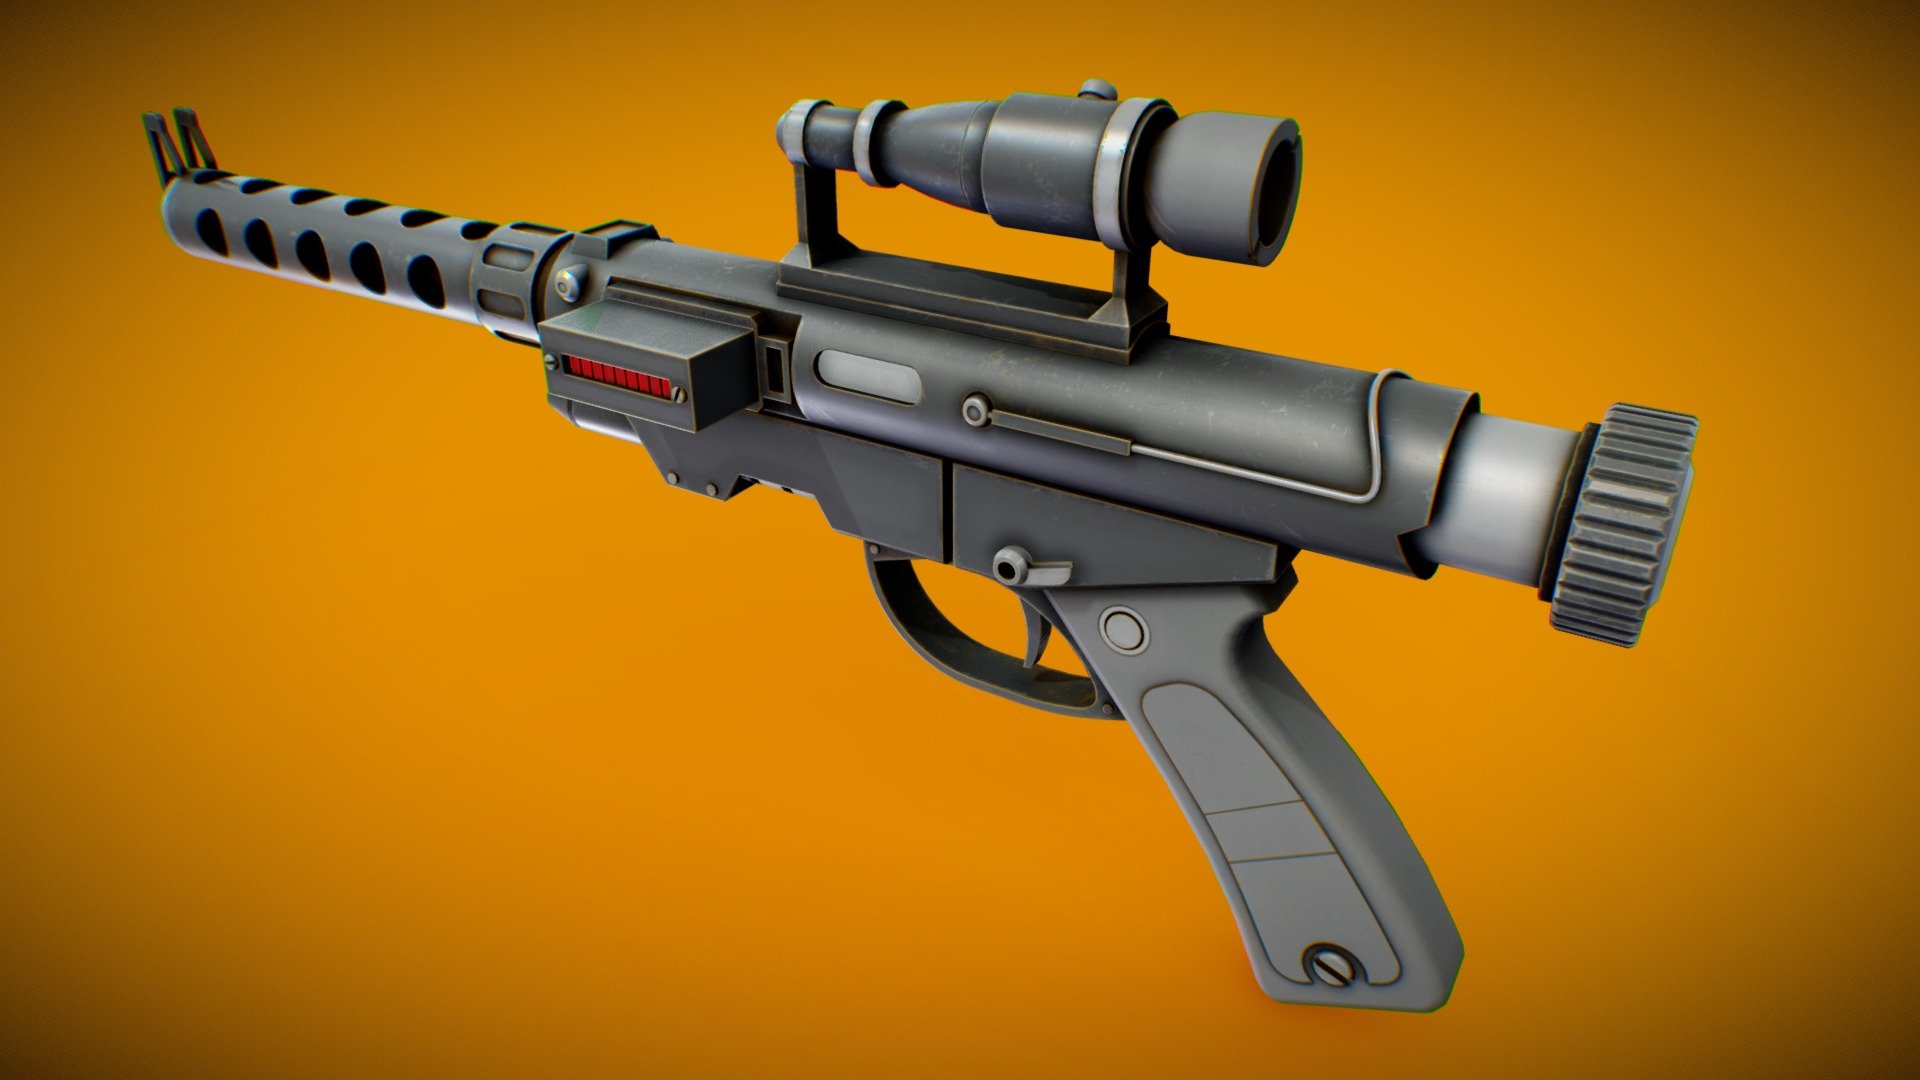 RG4D Blaster Pistol - Star Wars